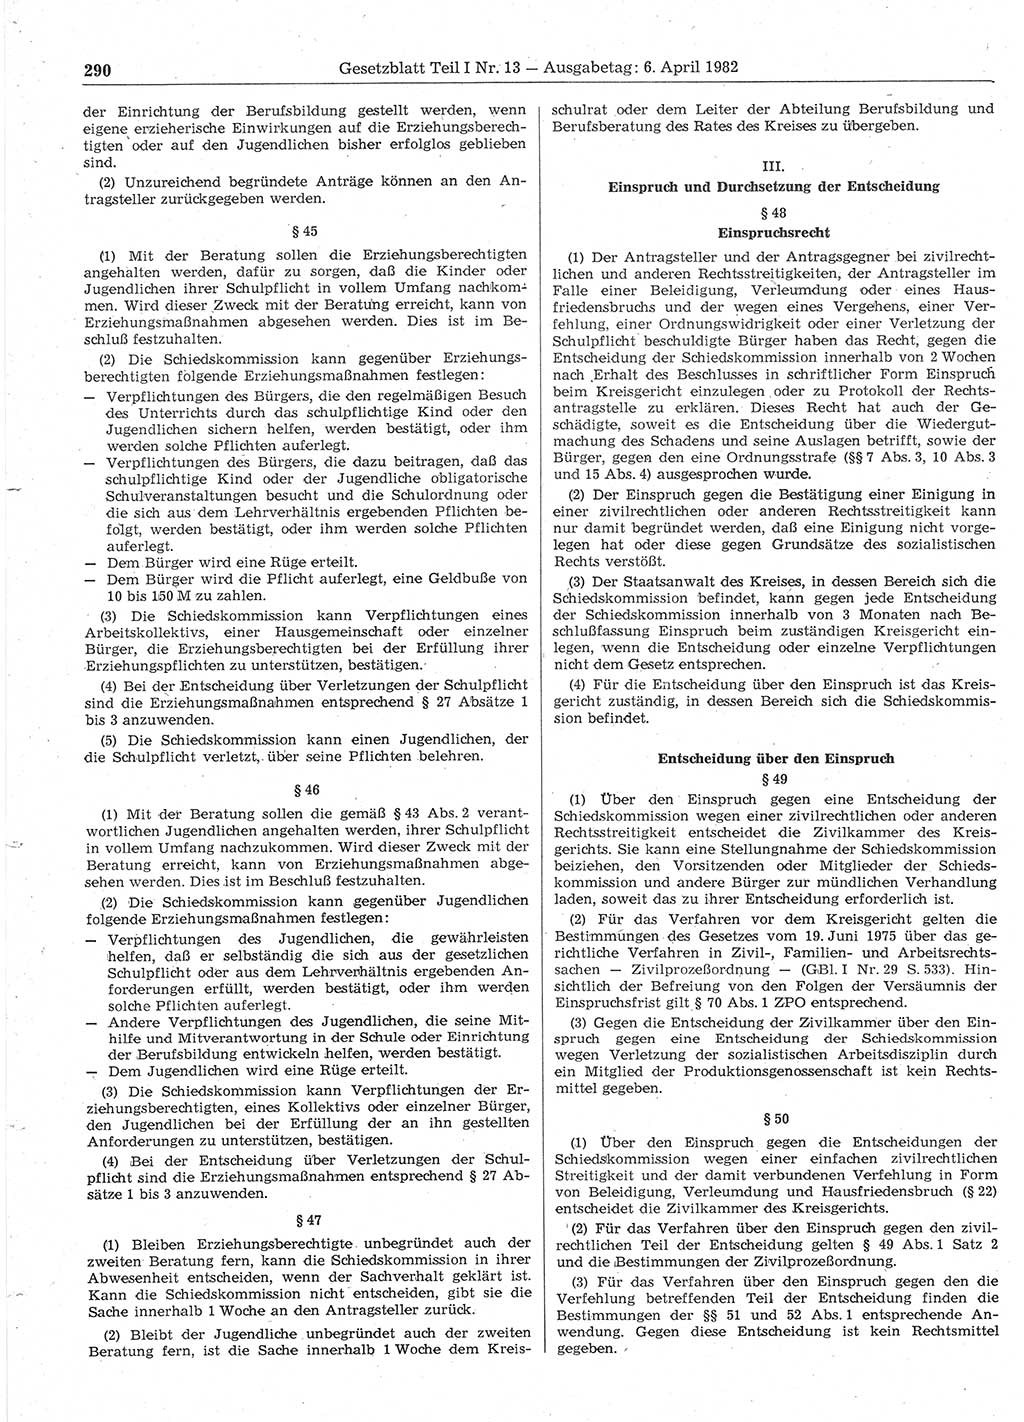 Gesetzblatt (GBl.) der Deutschen Demokratischen Republik (DDR) Teil Ⅰ 1982, Seite 290 (GBl. DDR Ⅰ 1982, S. 290)